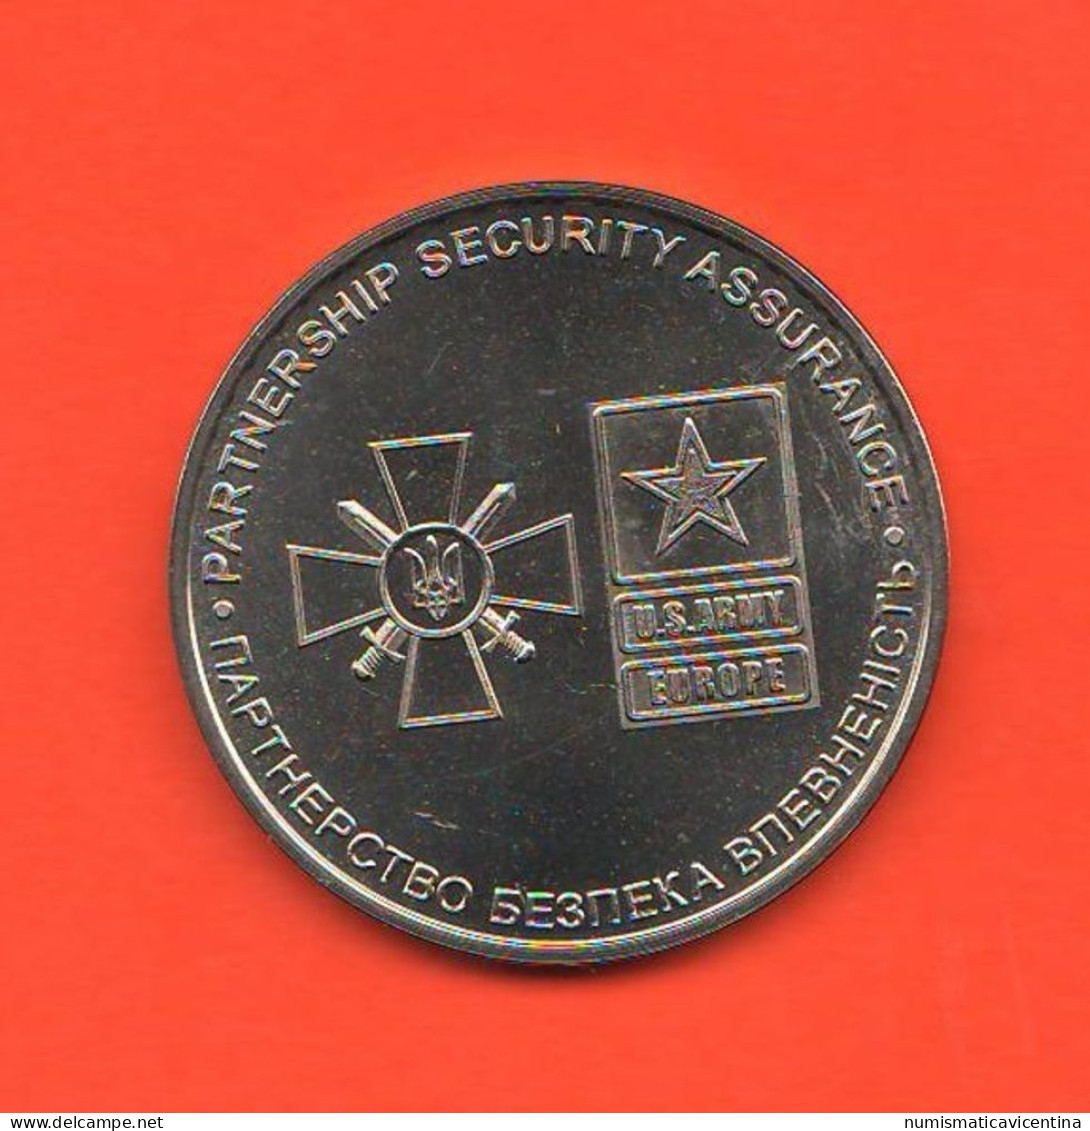 Saber Guardian Rapid Trident 2015 Ukraina Ucraine America Partnership Security Assurance Medal Medaille - Professionnels/De Société